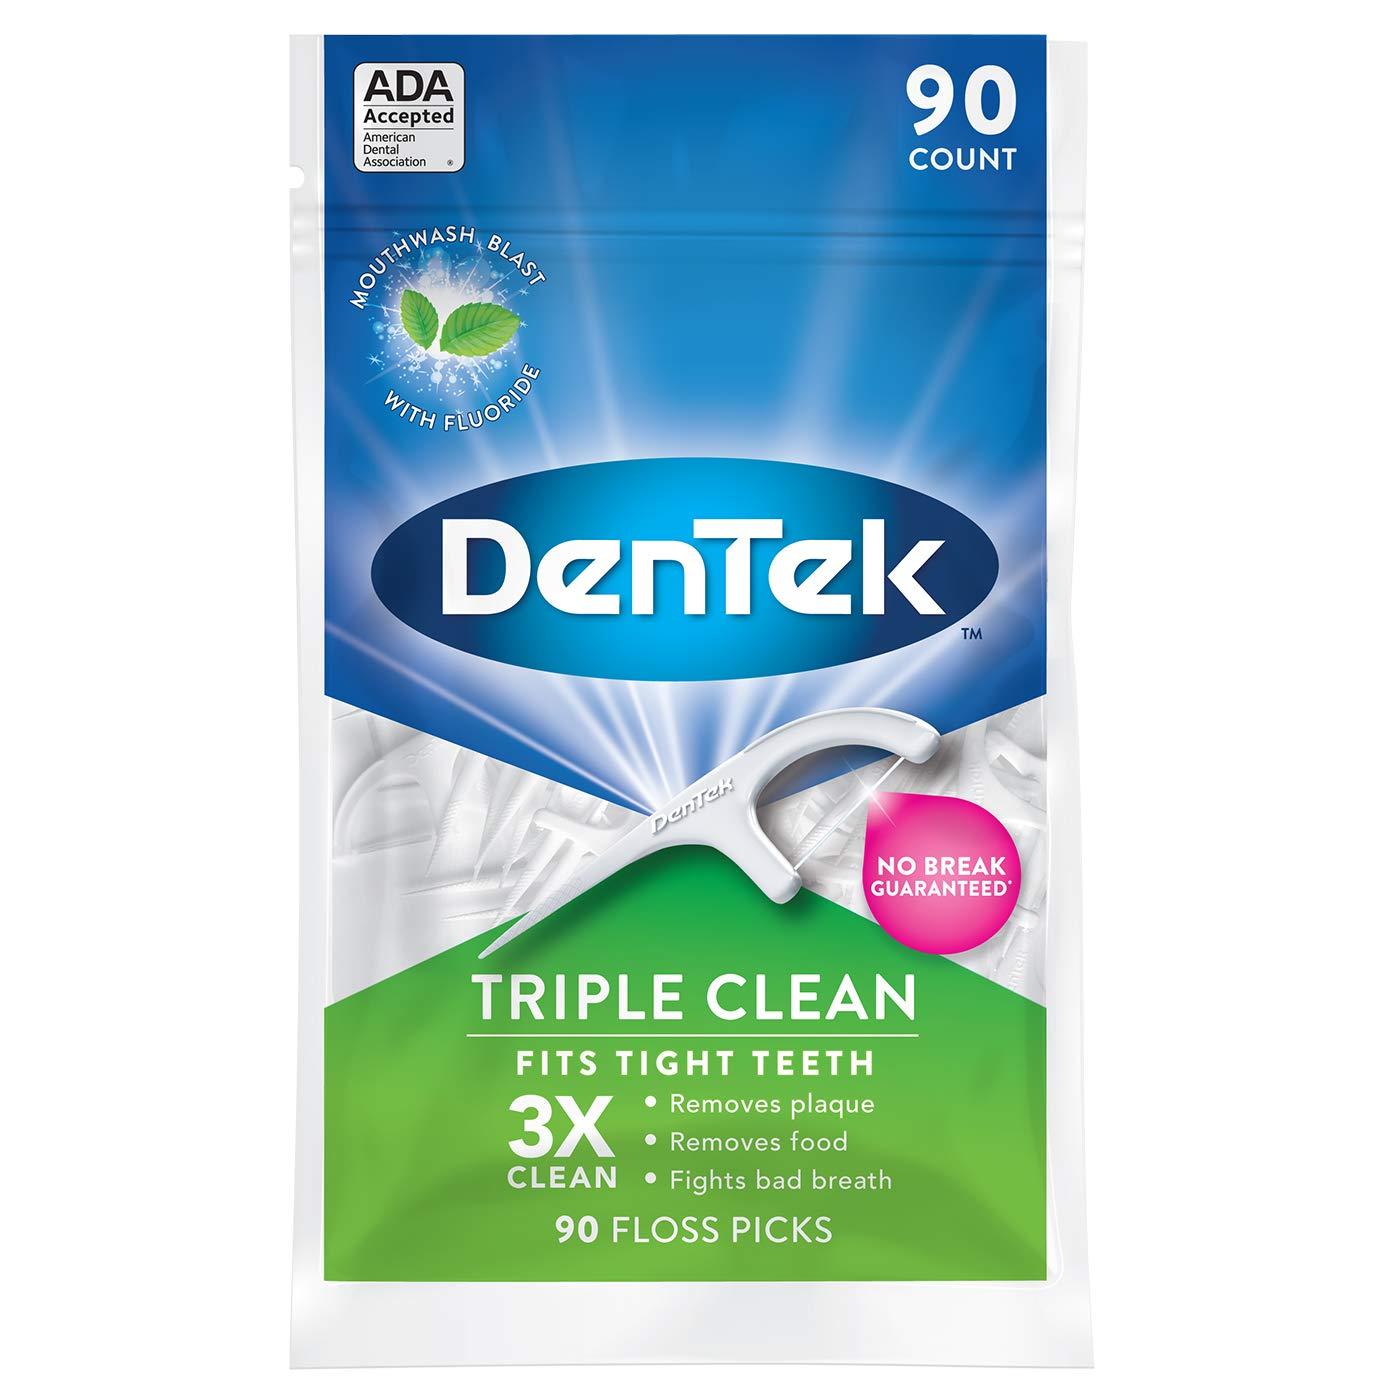 90 DenTek Triple Clean Floss Picks for $1.68 Shipped